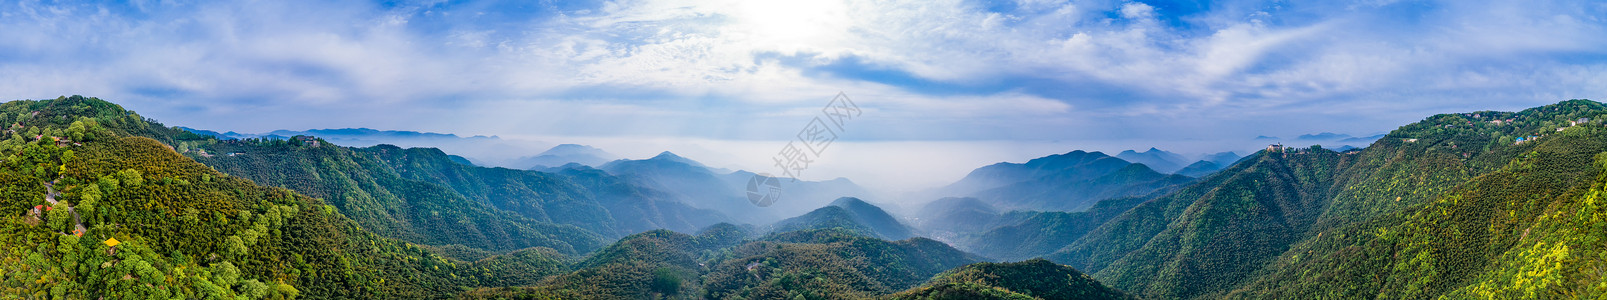 莫干山顶峰全景自然风景背景图片